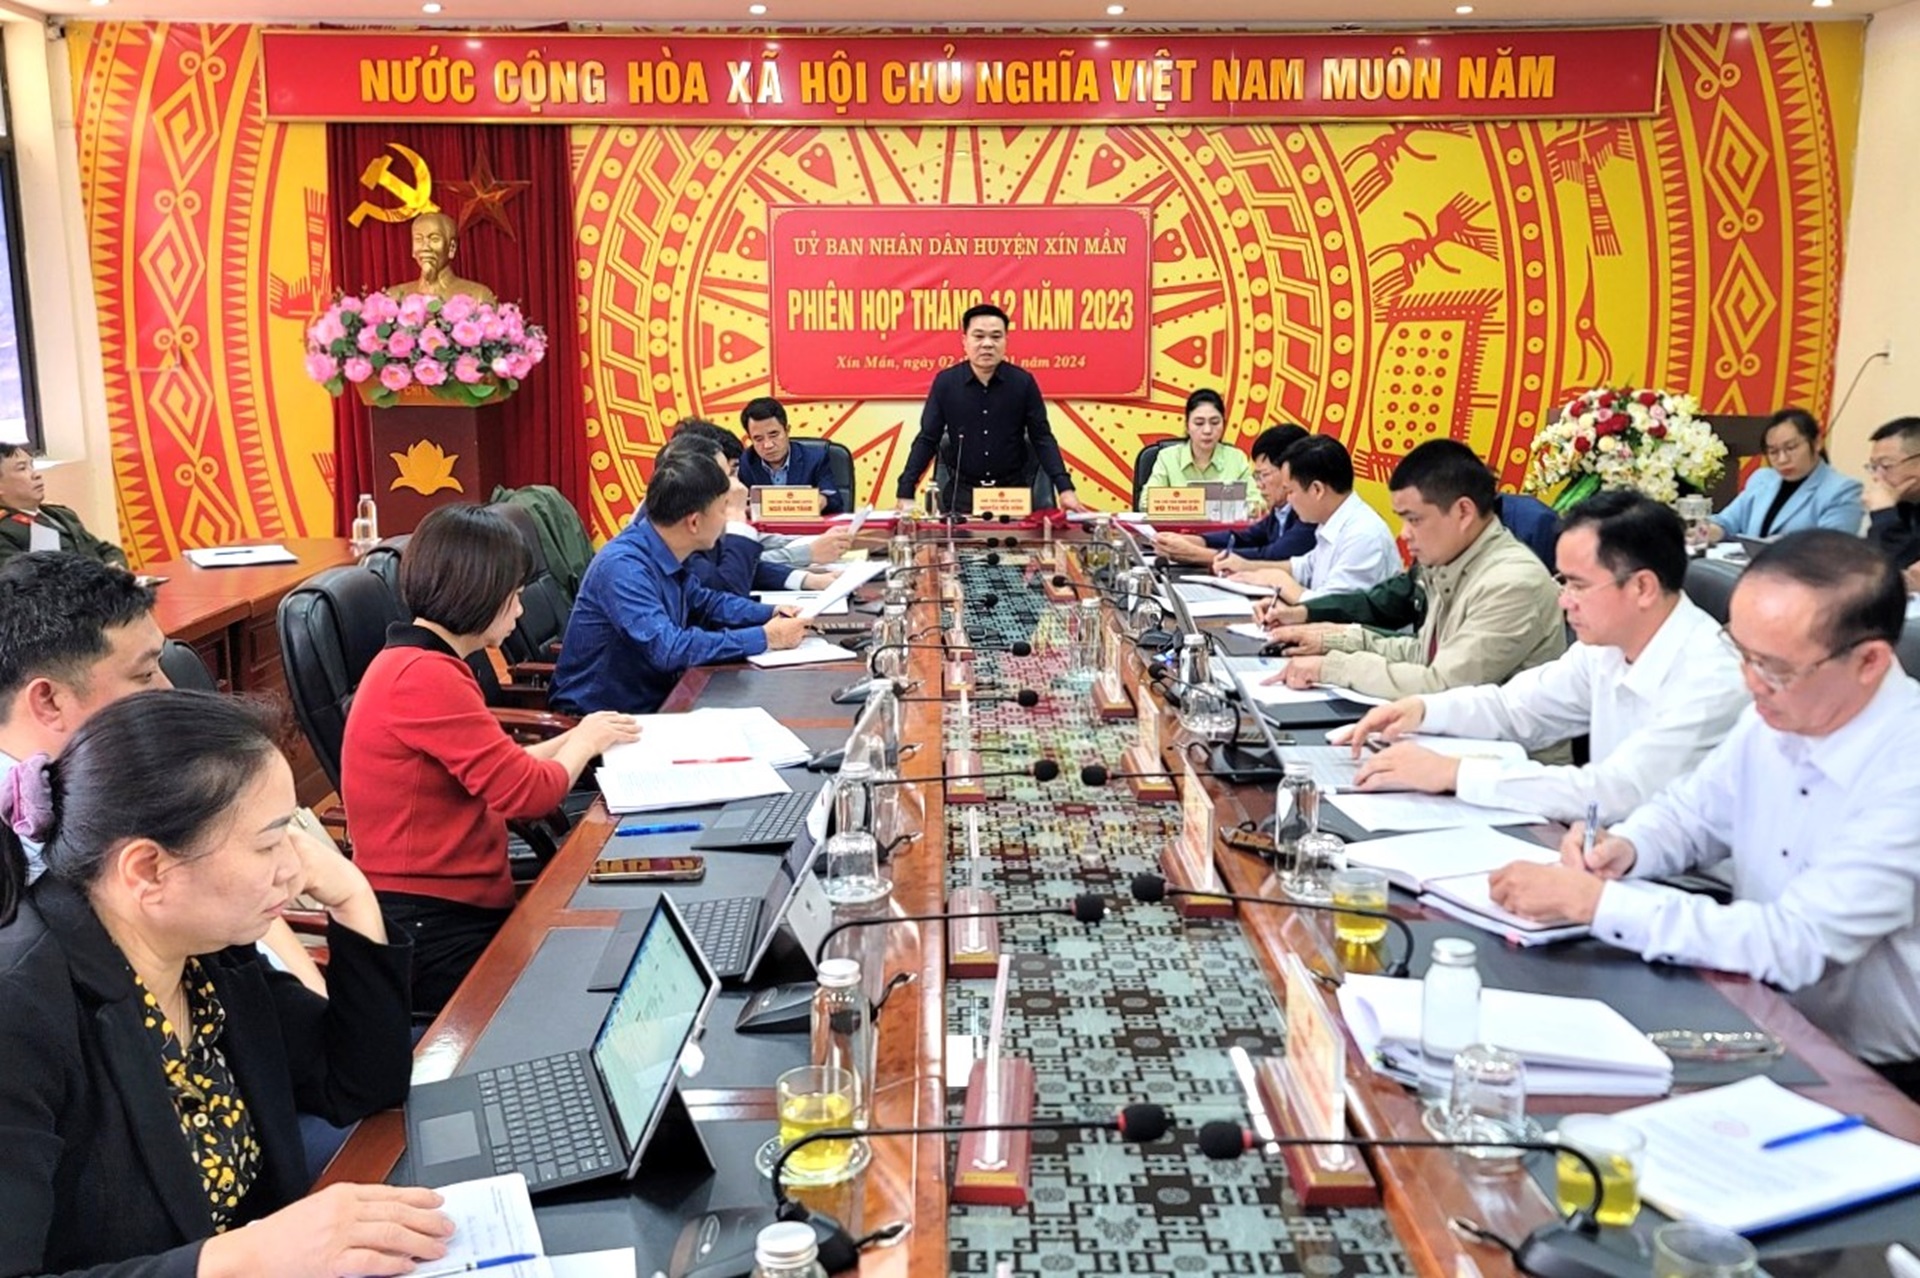 Phiên họp UBND huyện Xín Mần tháng 12 năm 2023